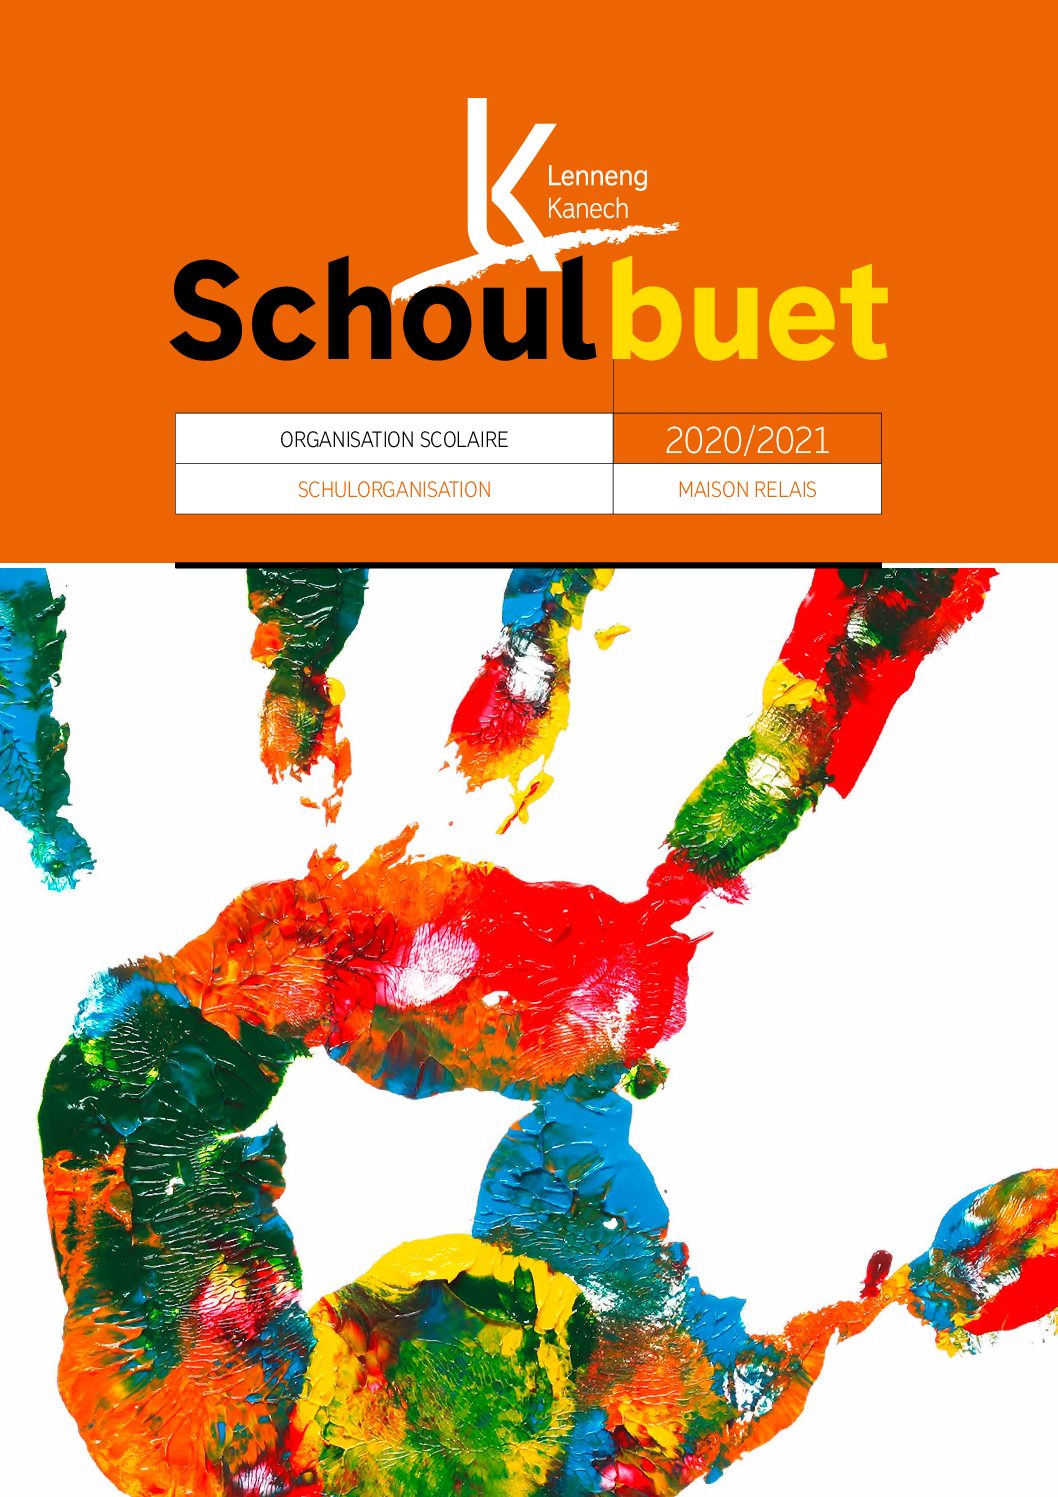 2020-2021 Schoulbuet